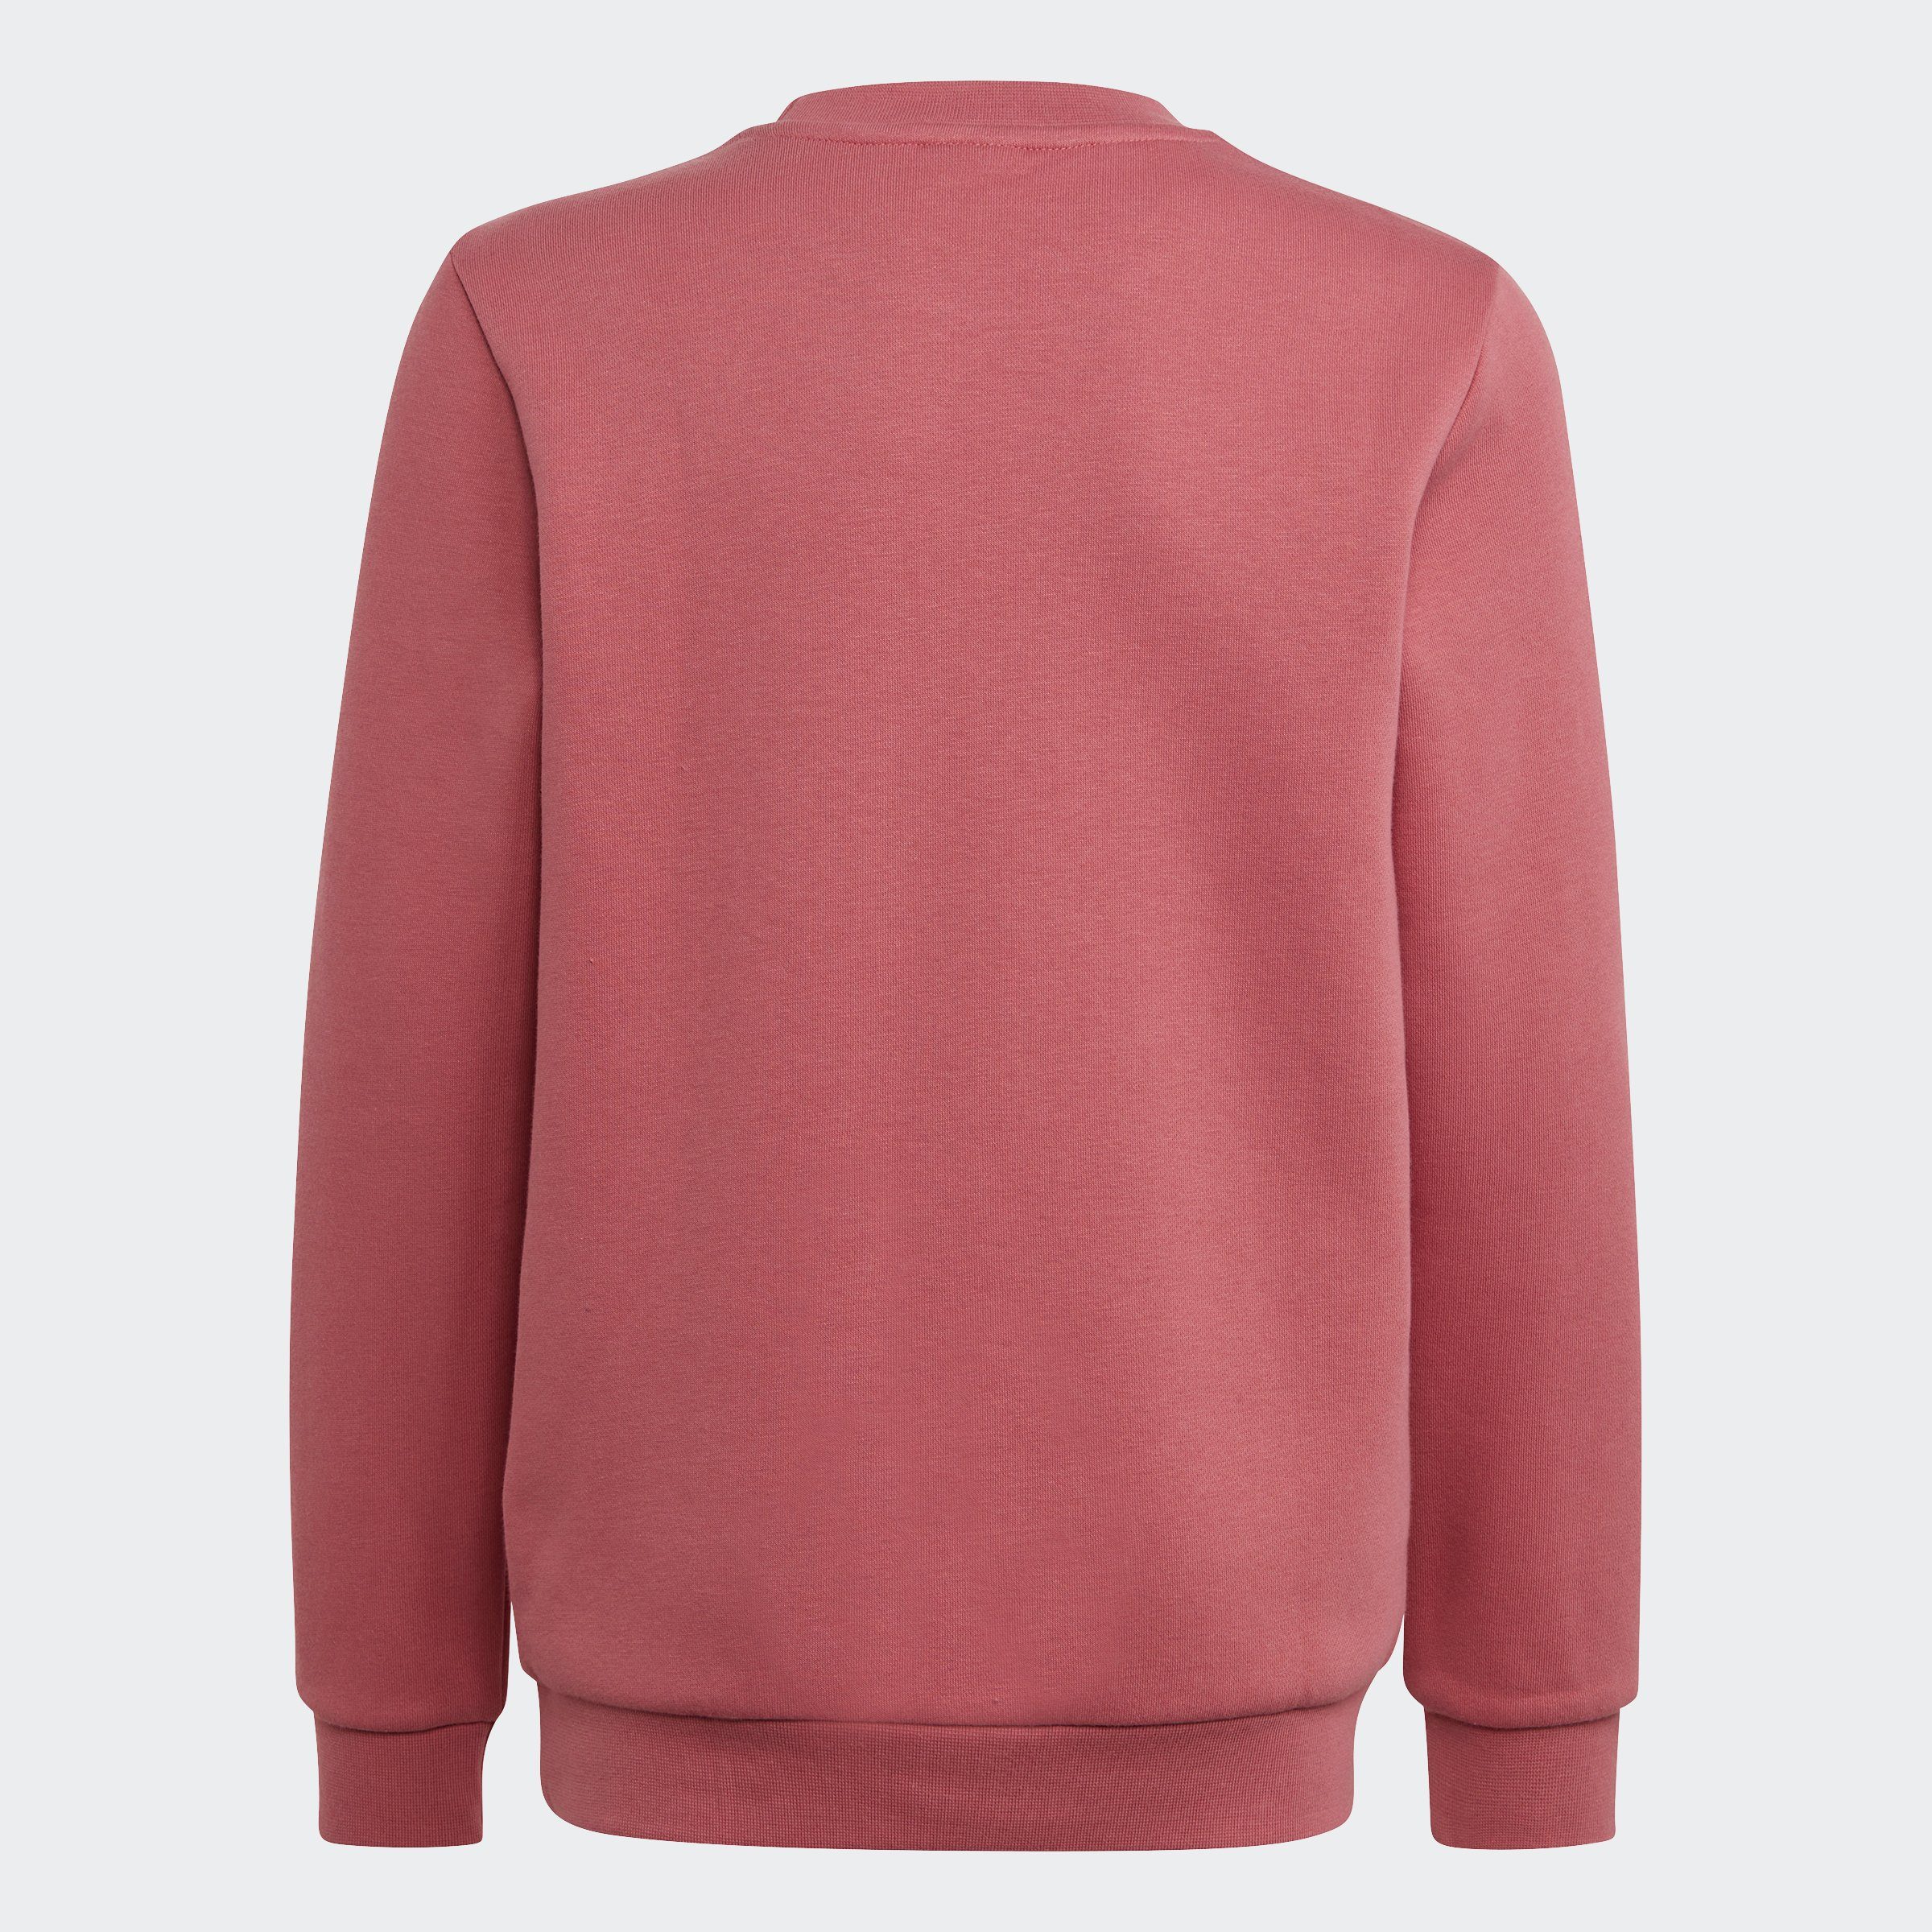 Strata Pink Sweatshirt adidas Originals ADICOLOR